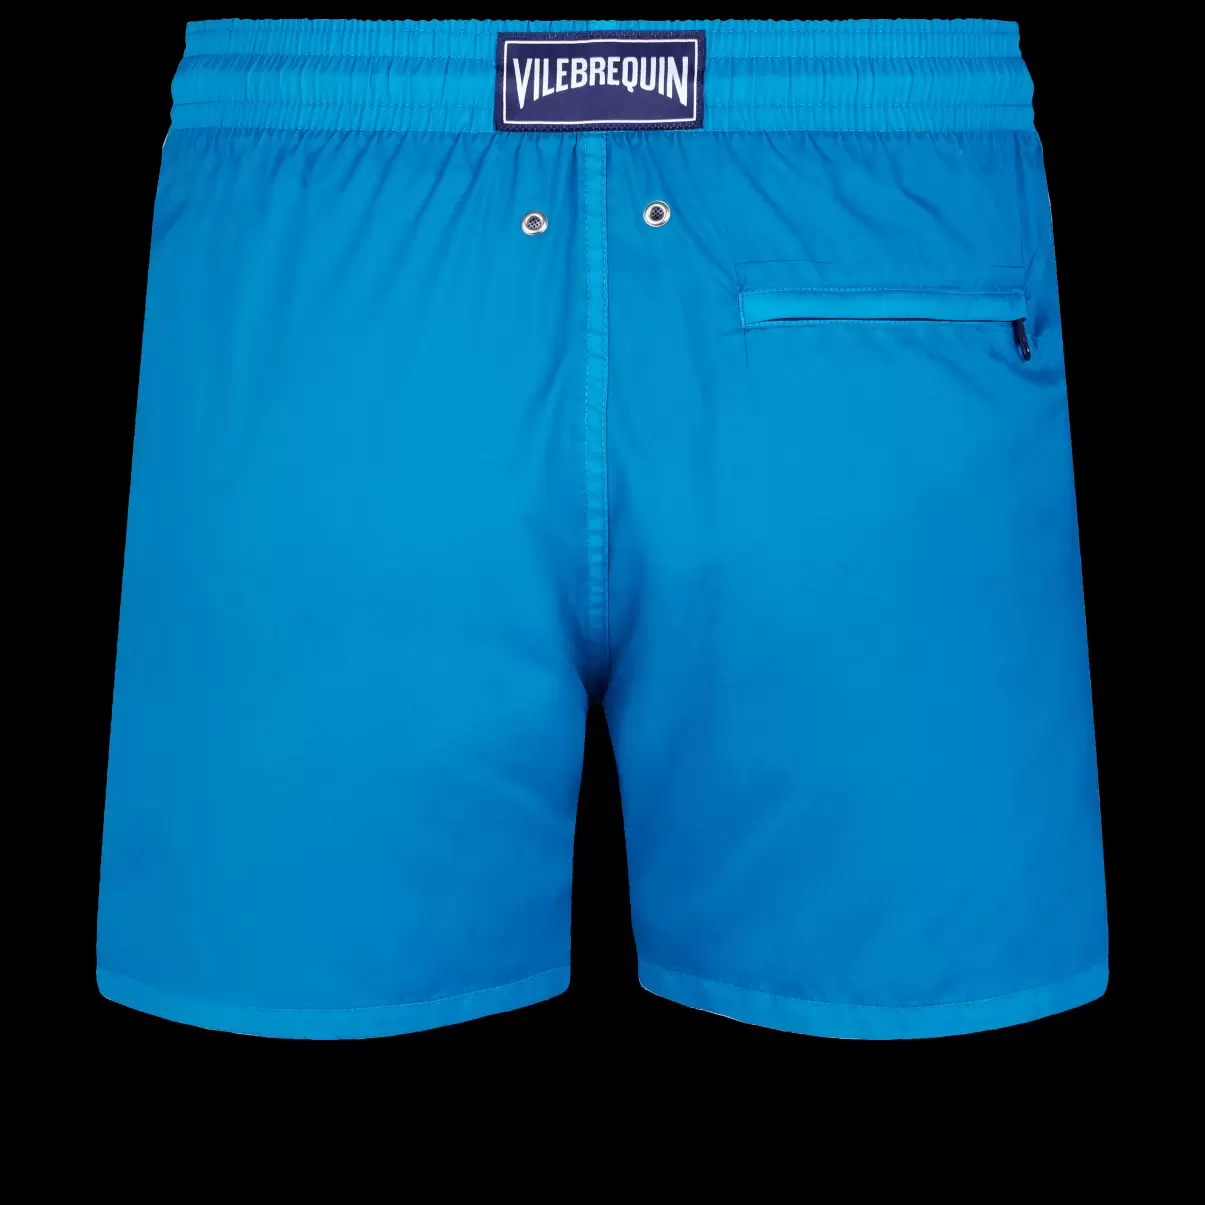 Markt Herren Ultraleichte Und Verstaubare Solid Badeshorts Für Herren Hawaii Blue / Blau Vilebrequin Klassische Dünne Stoffe - 4